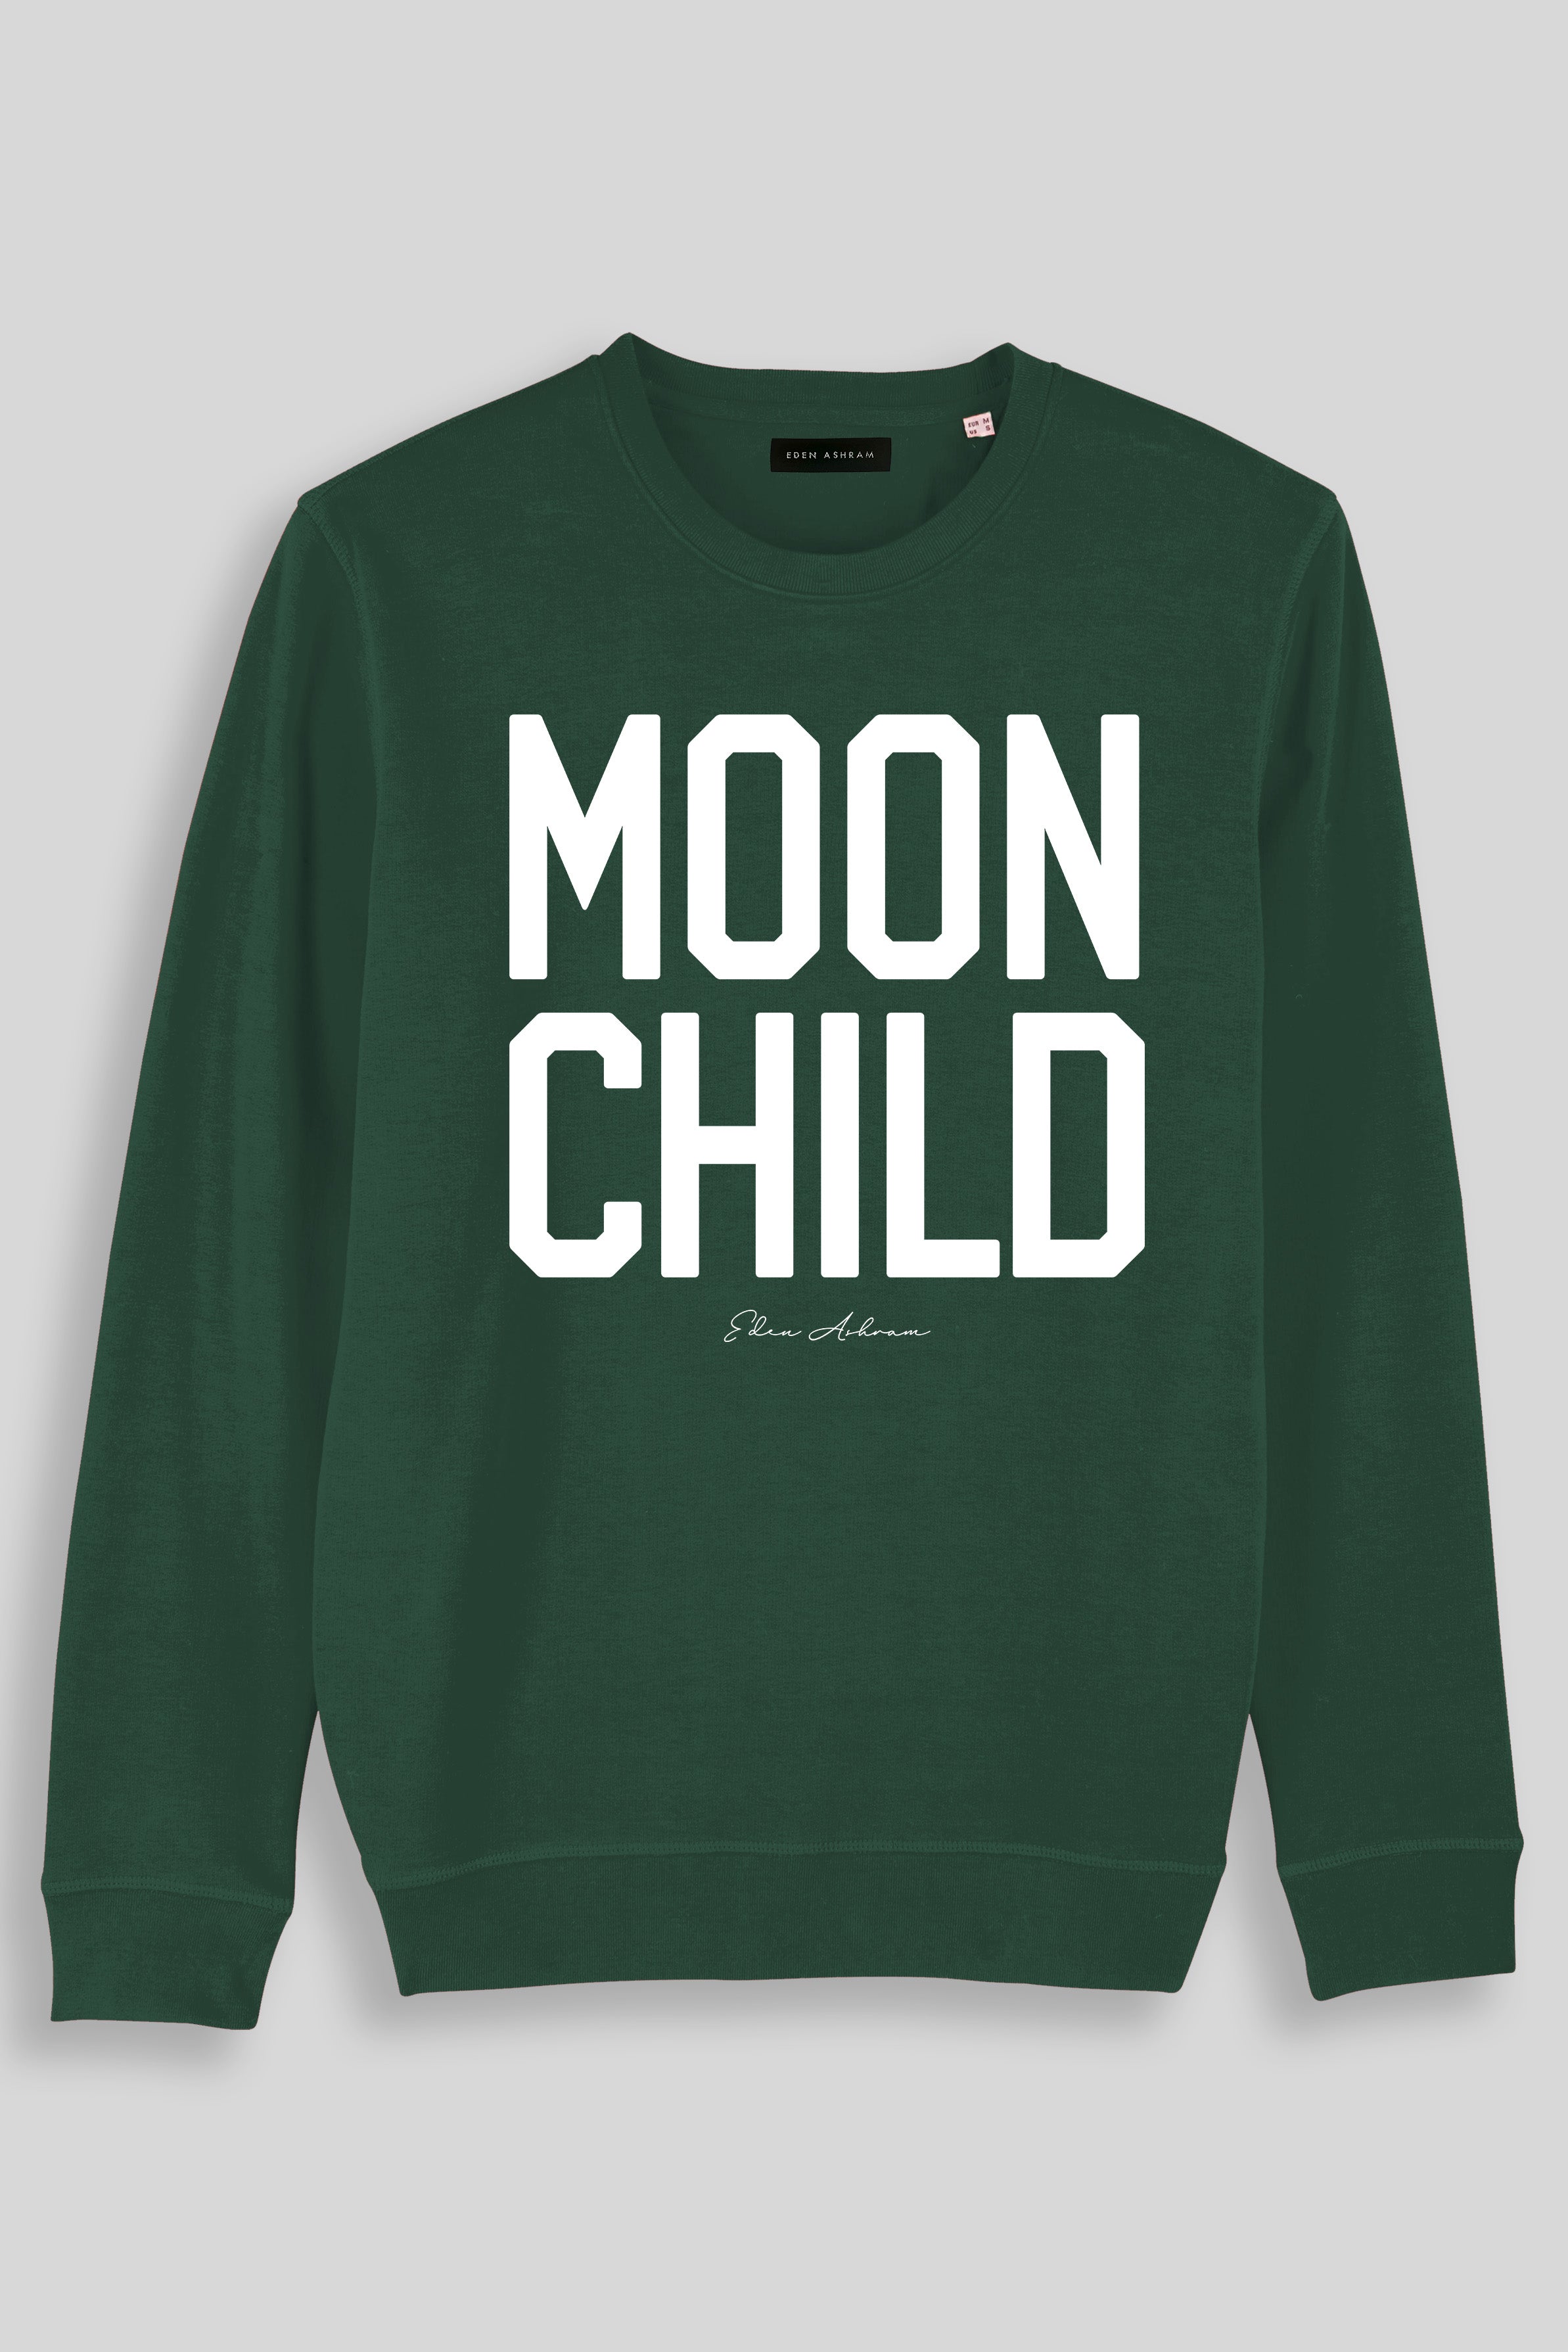 Eden Ashram Moon Child Premium Crew Neck Sweatshirt Bottle Green